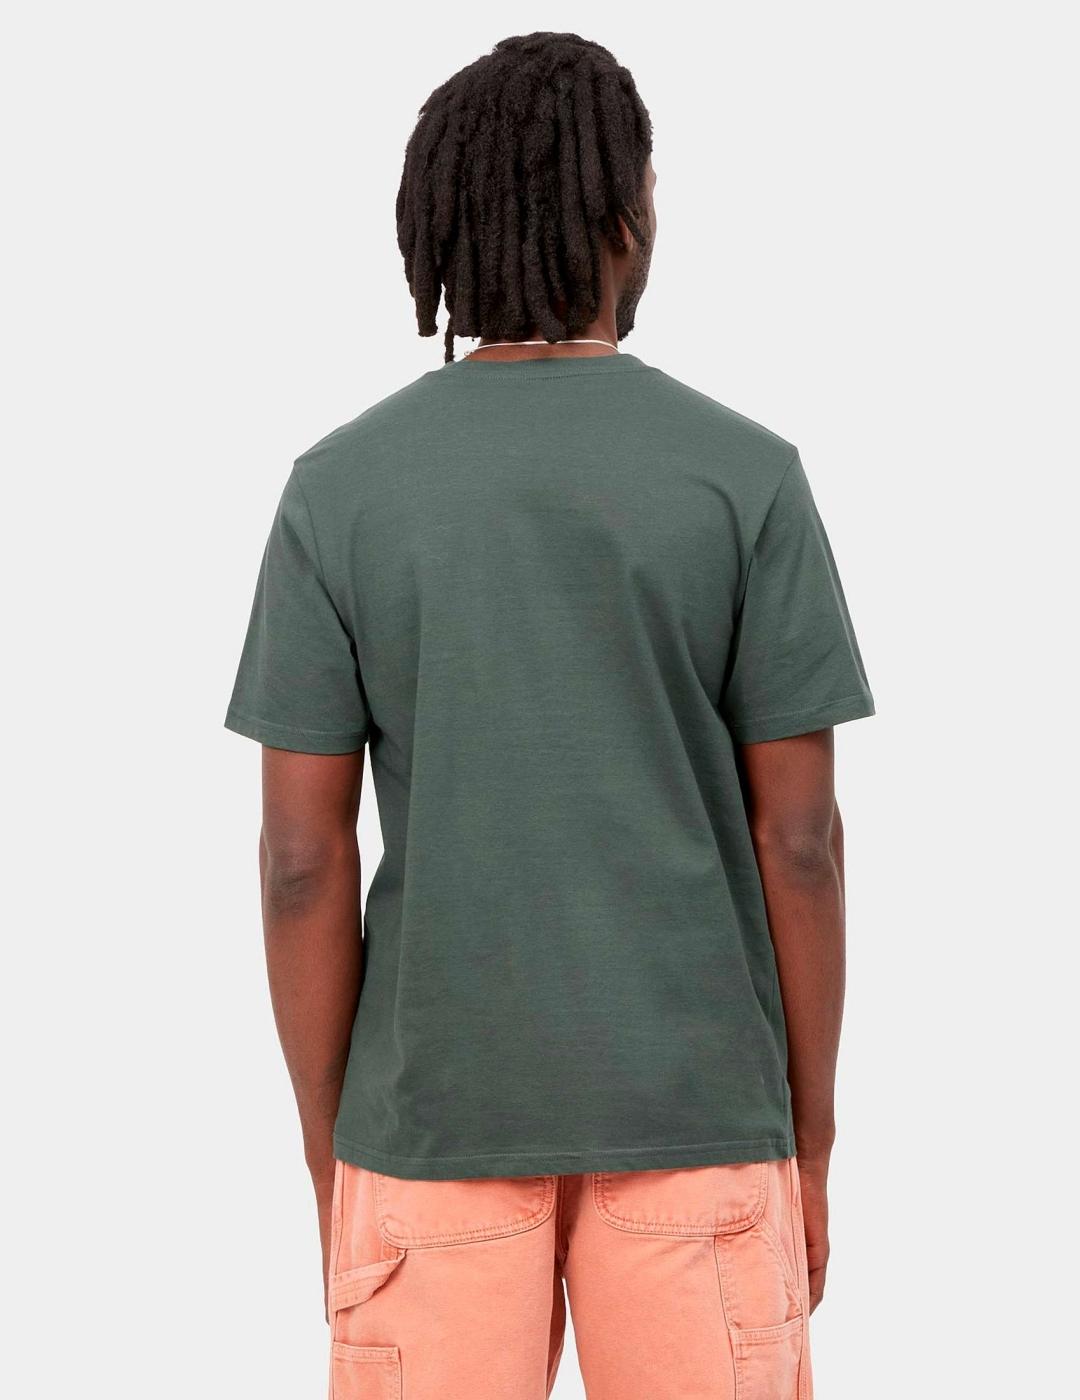 Camiseta CARHARTT POCKET - Hemlock Green